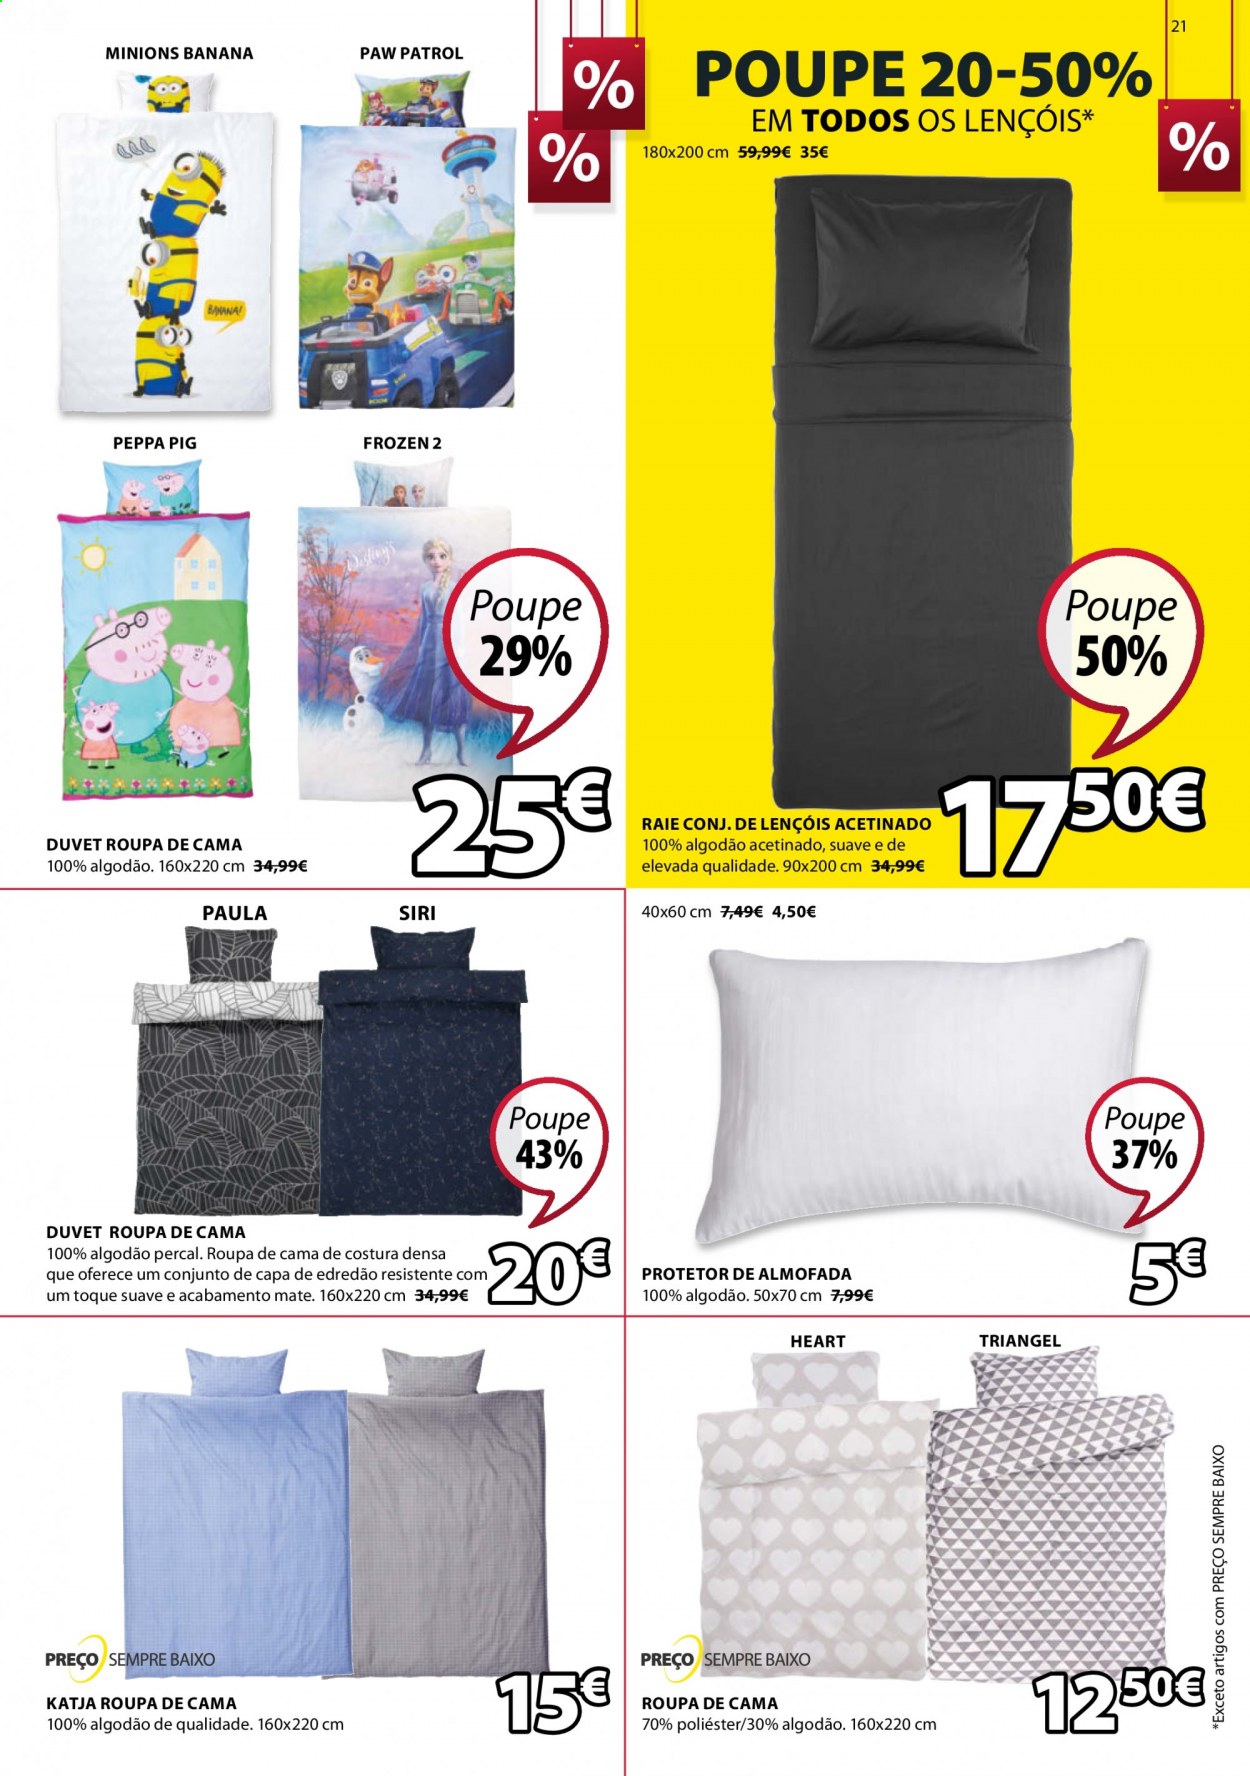 thumbnail - Folheto Jysk - 25.12.2020 - 13.1.2021 - Produtos em promoção - Frozen, almofada, roupa de cama. Página 21.